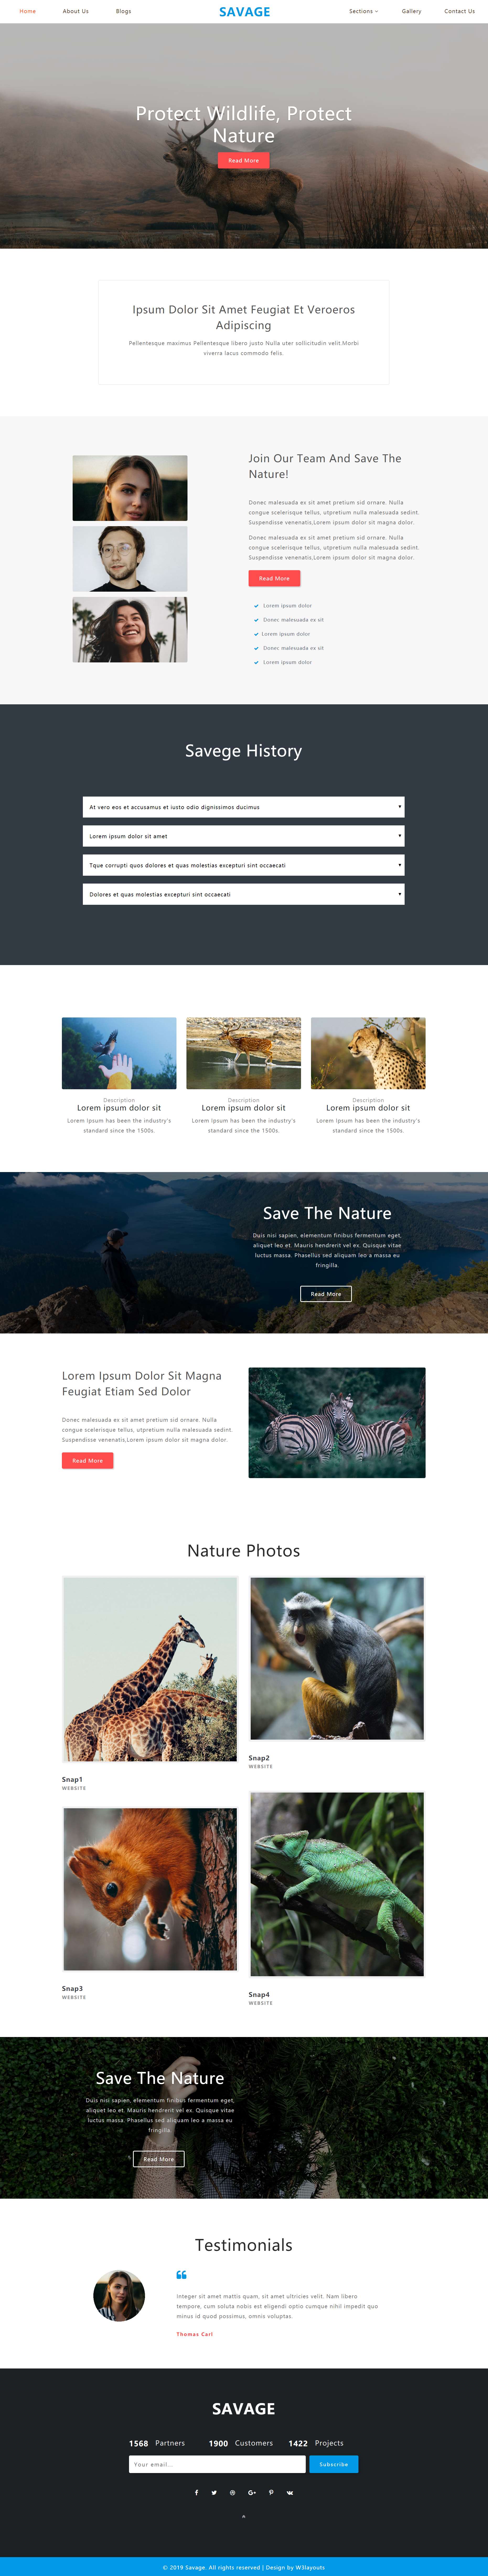 HTML5红色欧美样式野生动物保护网页模板